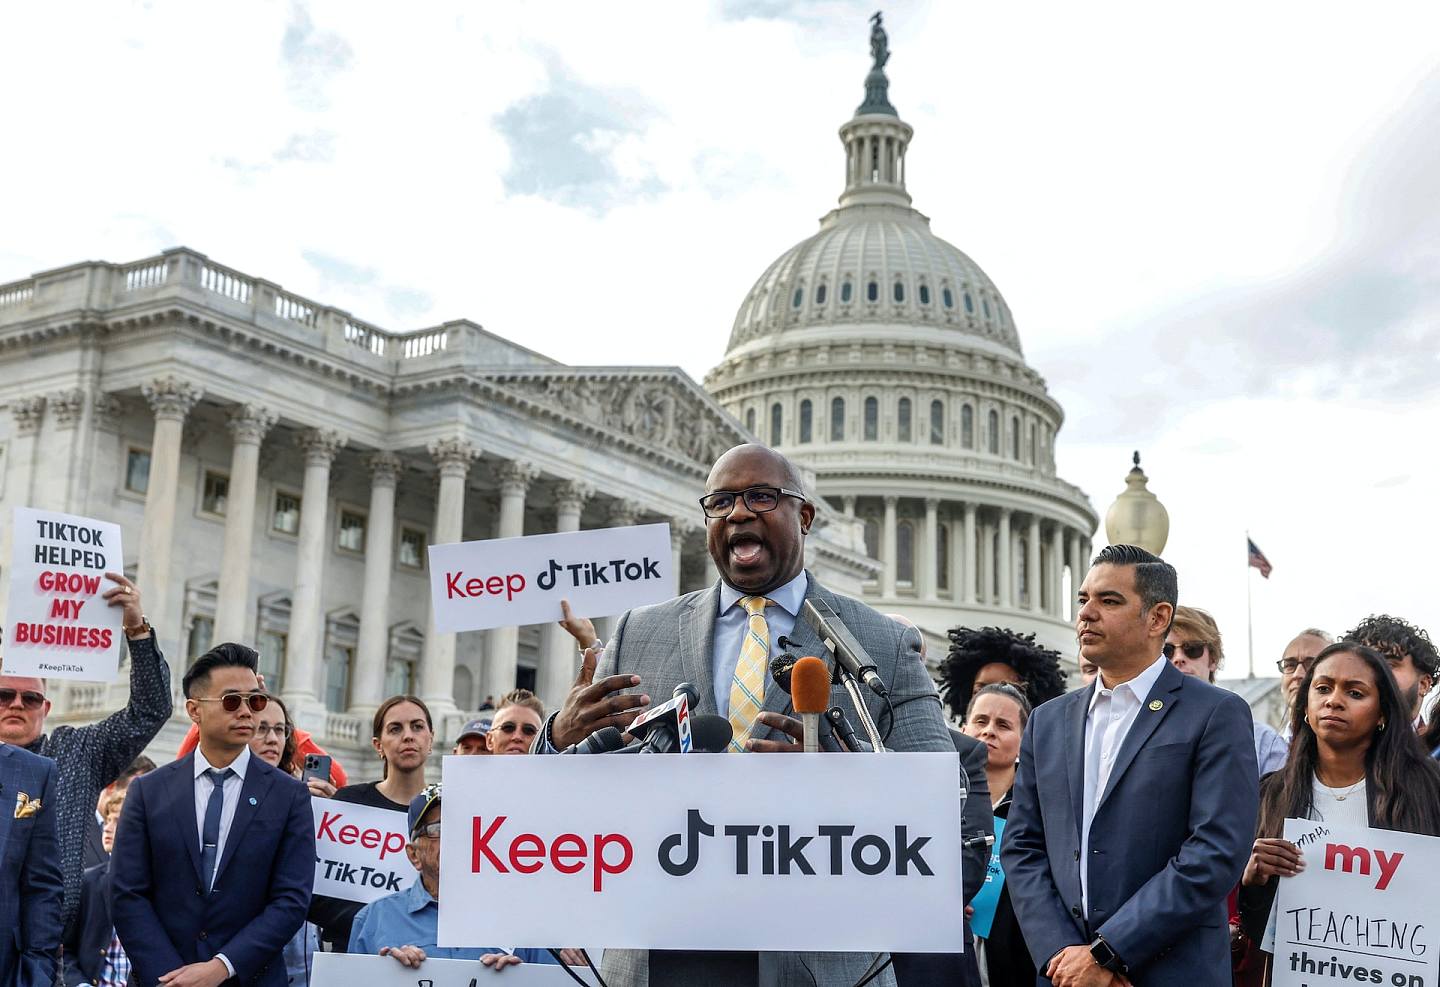 TikTok CEO周受资接受质询之际，国会外有议员及示威者声援，要求「保留TikTok」。 （Rueters）